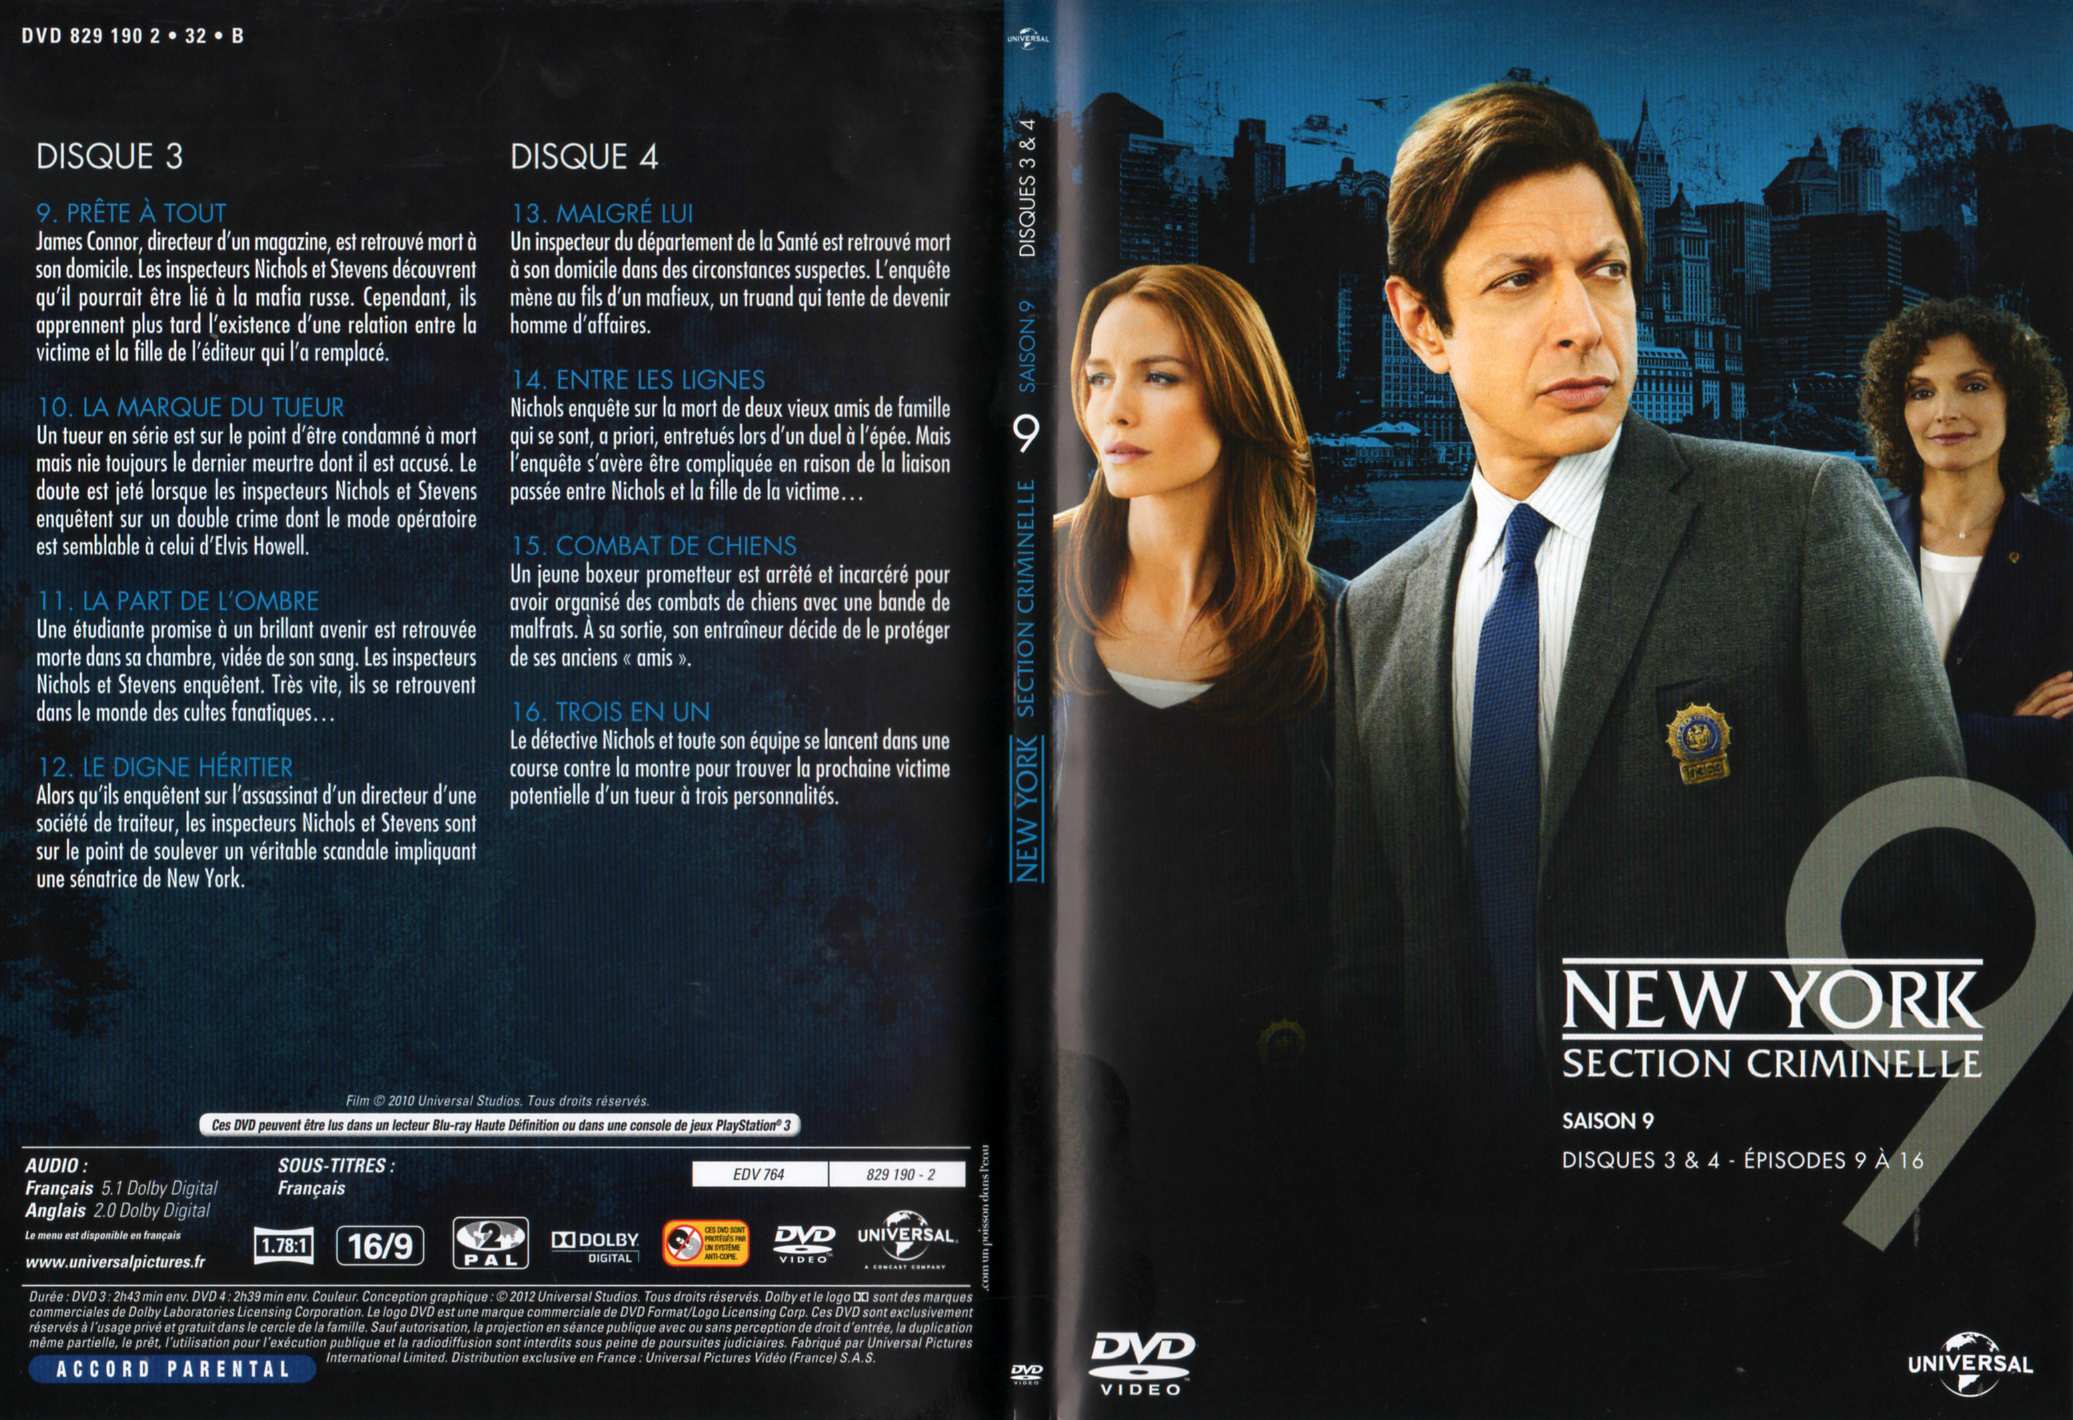 Jaquette DVD New york section criminelle saison 9 DVD 2